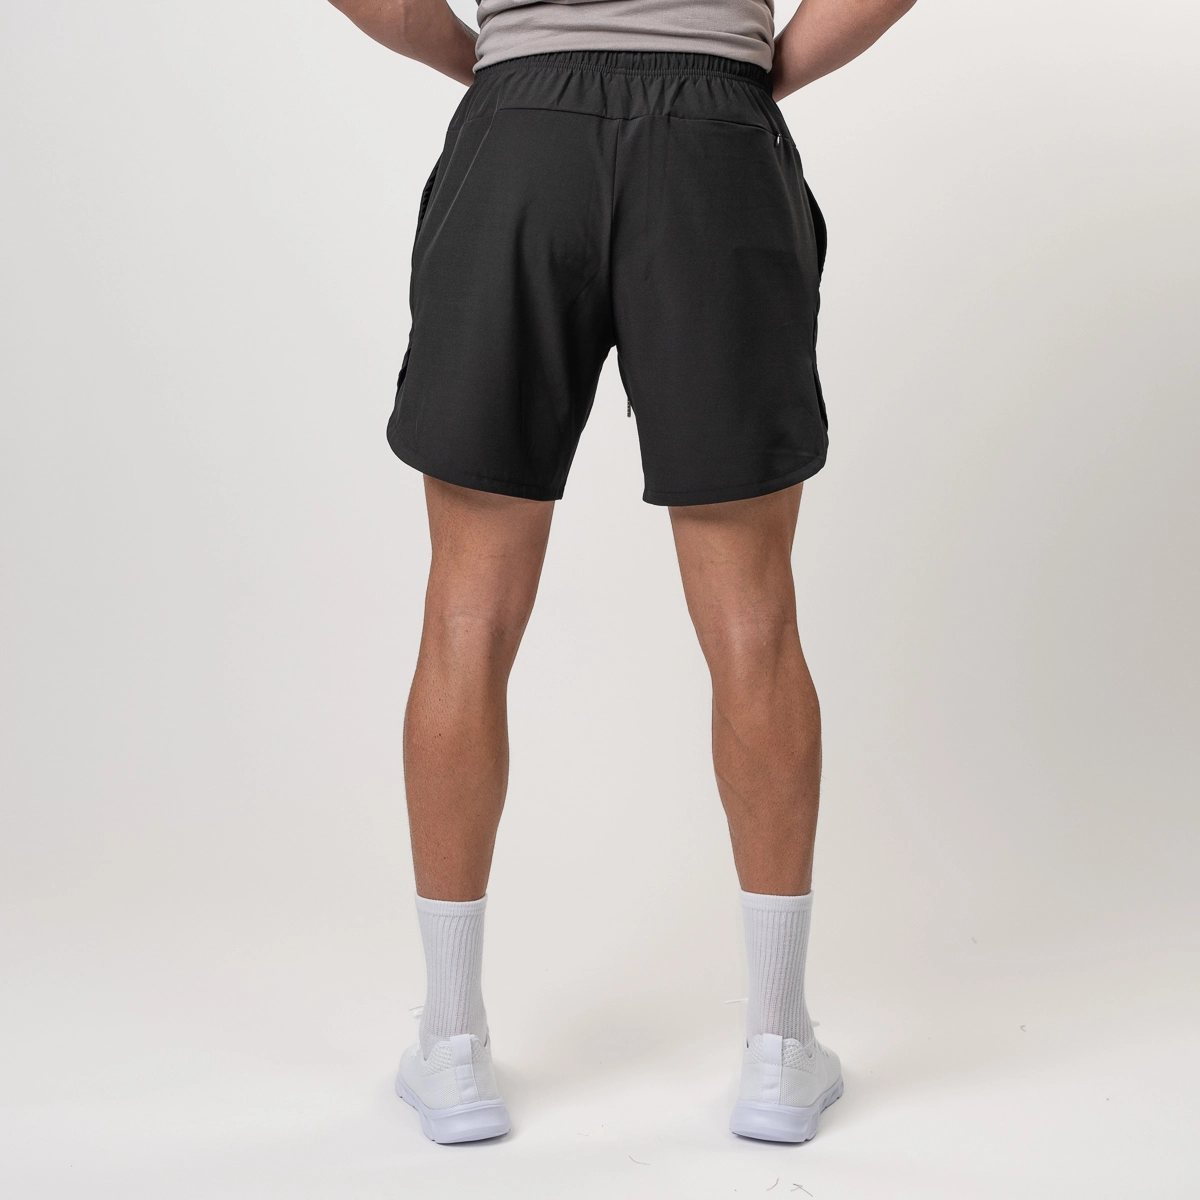 Athletic Shorts - Bucked Up